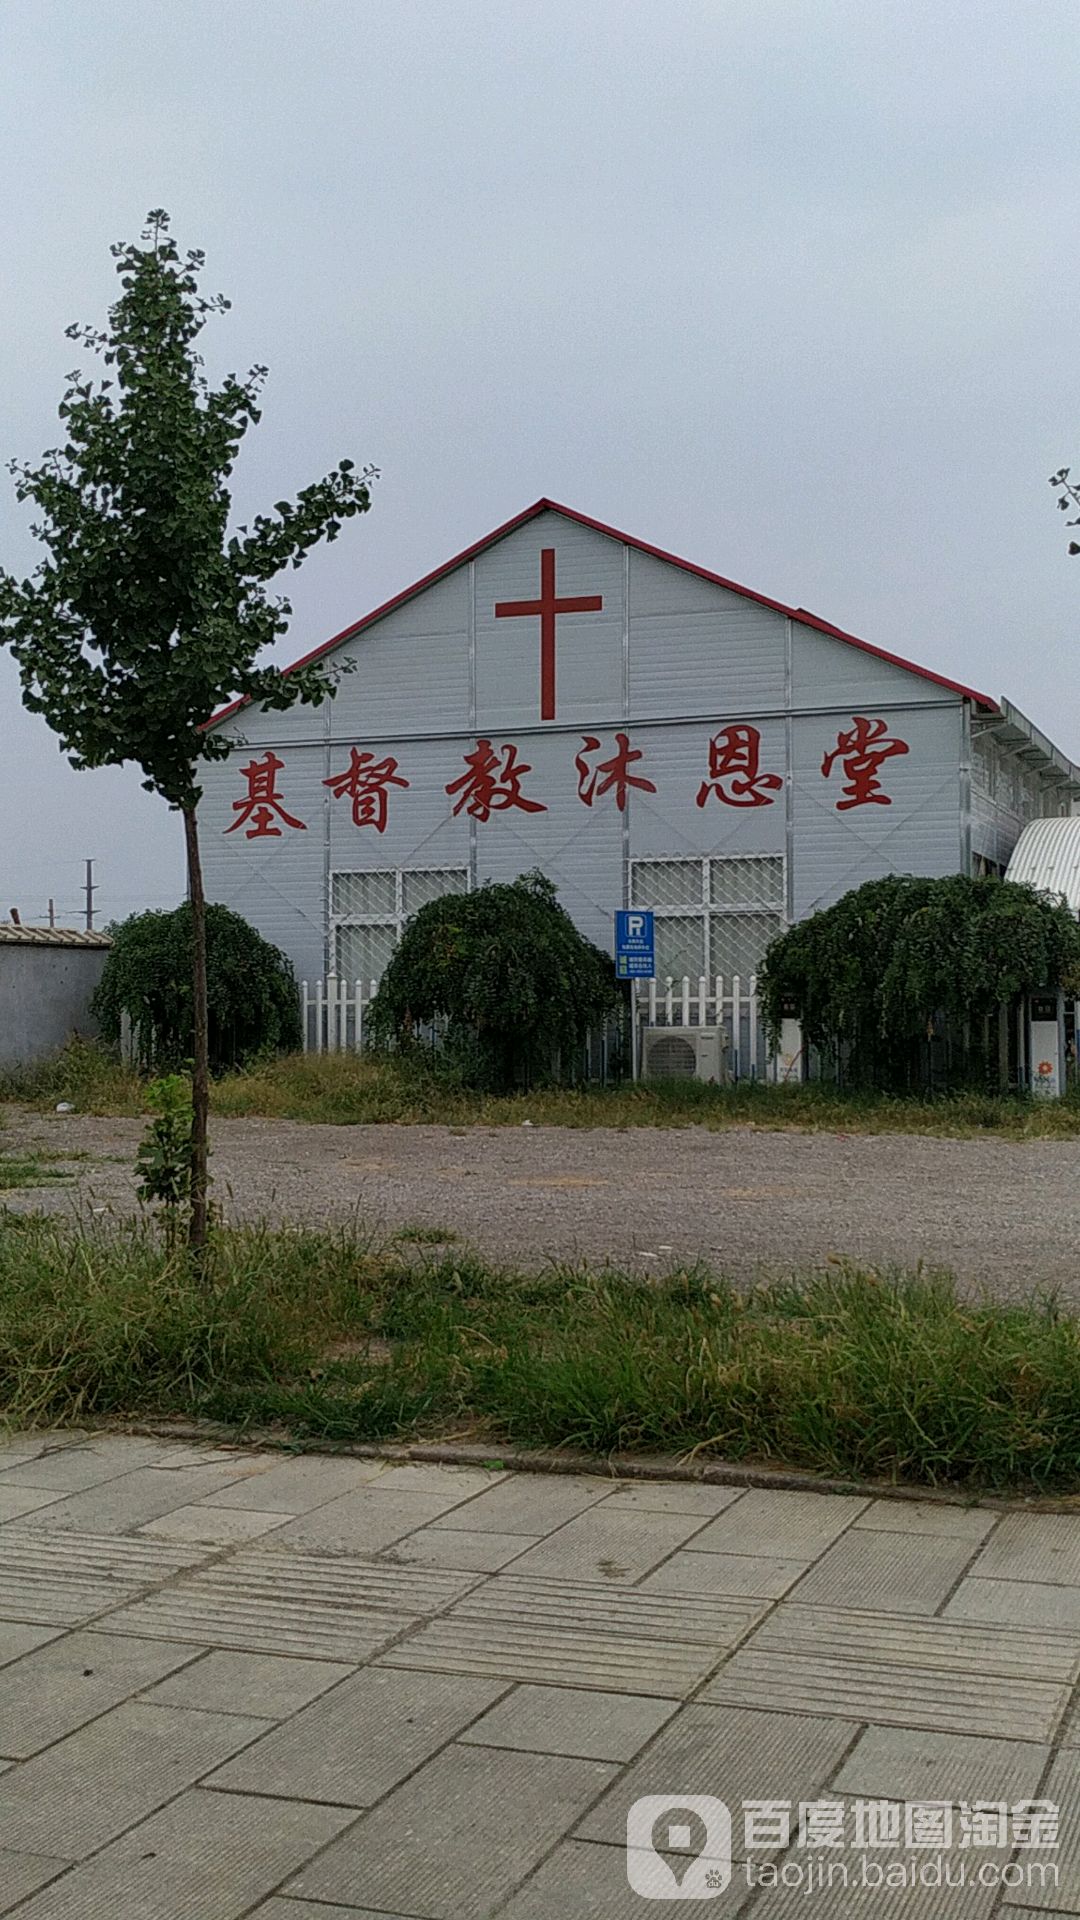 臨朐基督教堂沐恩堂